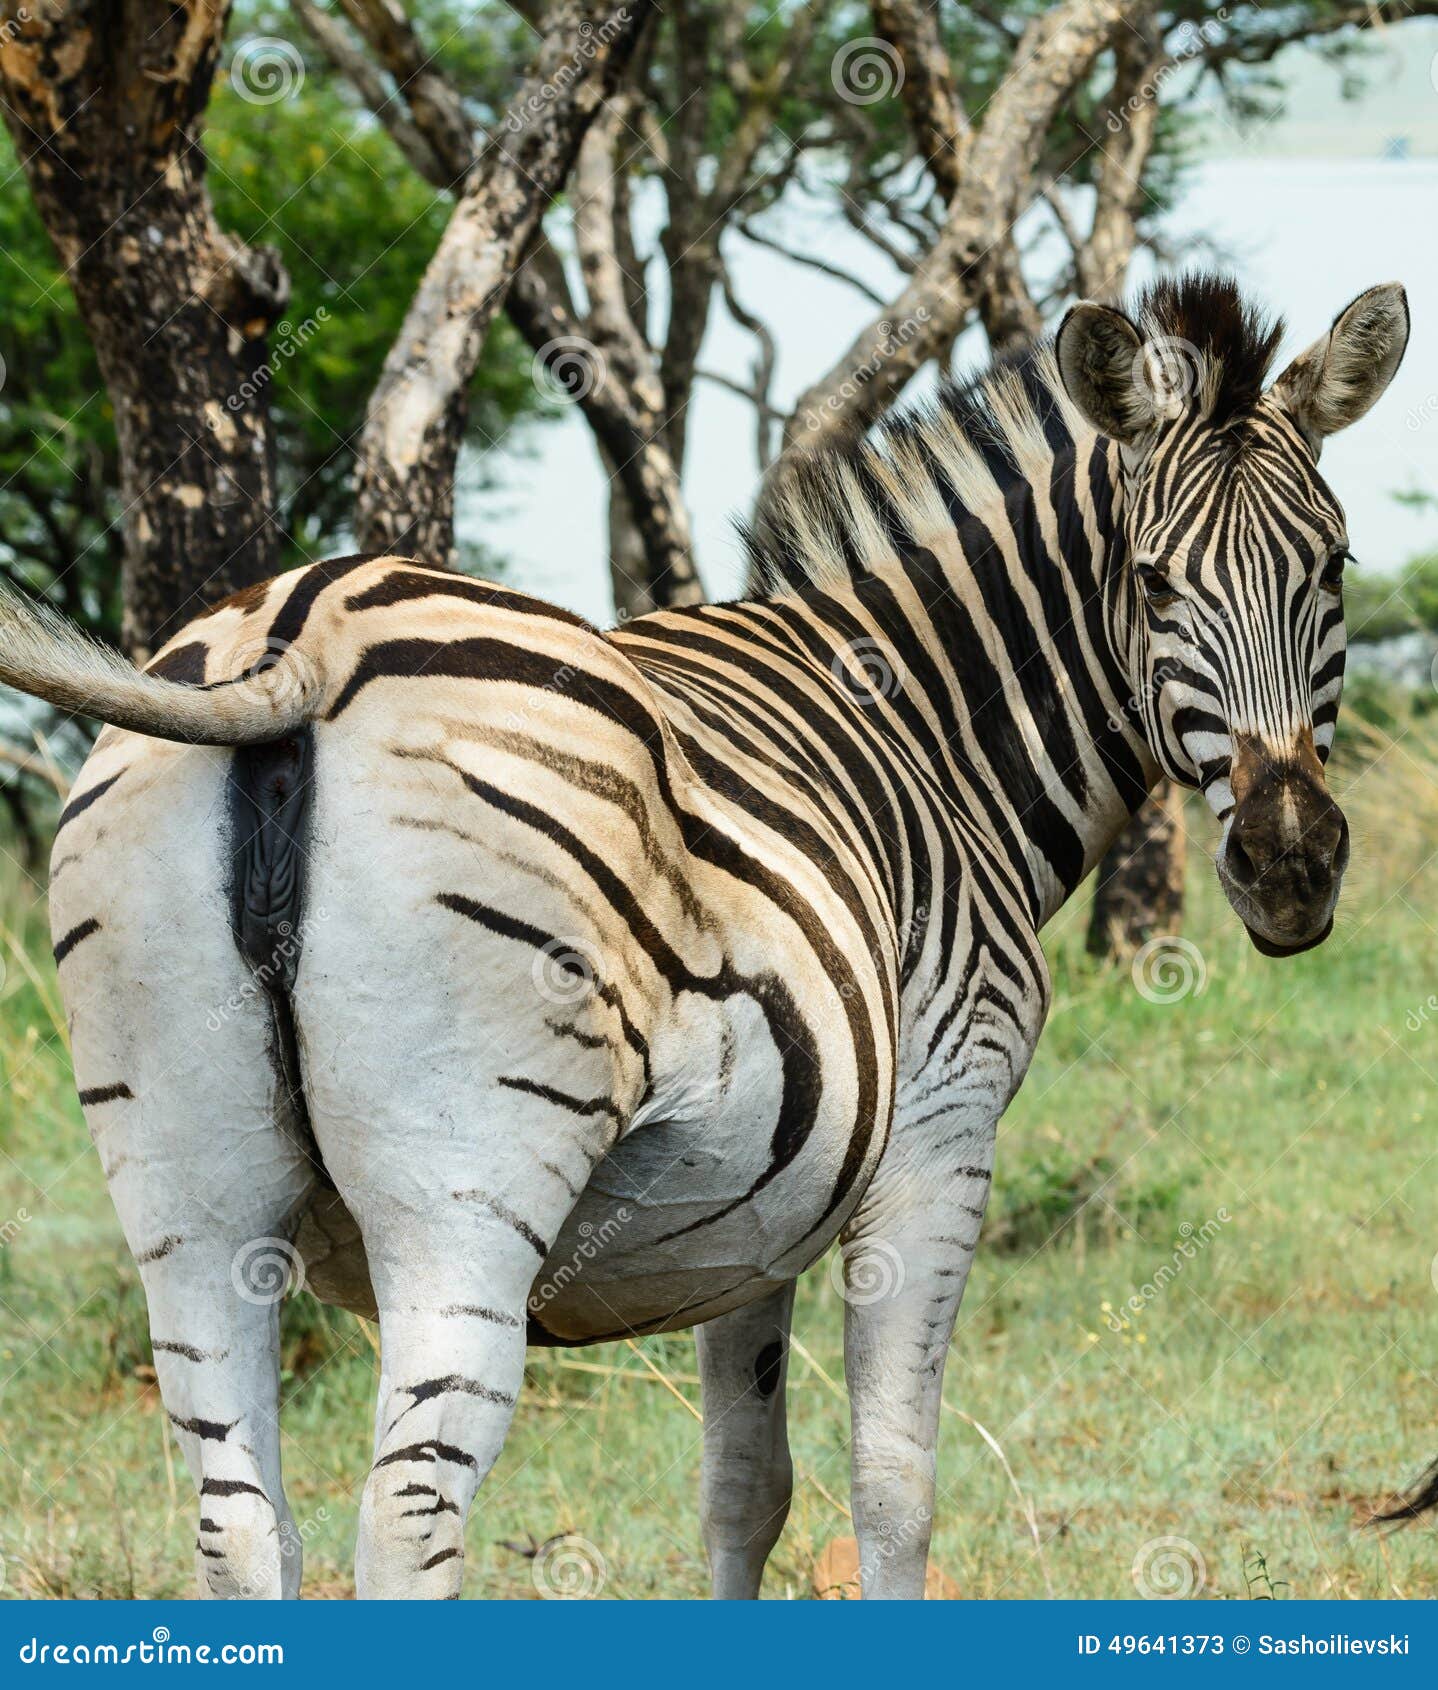 zebra male and female